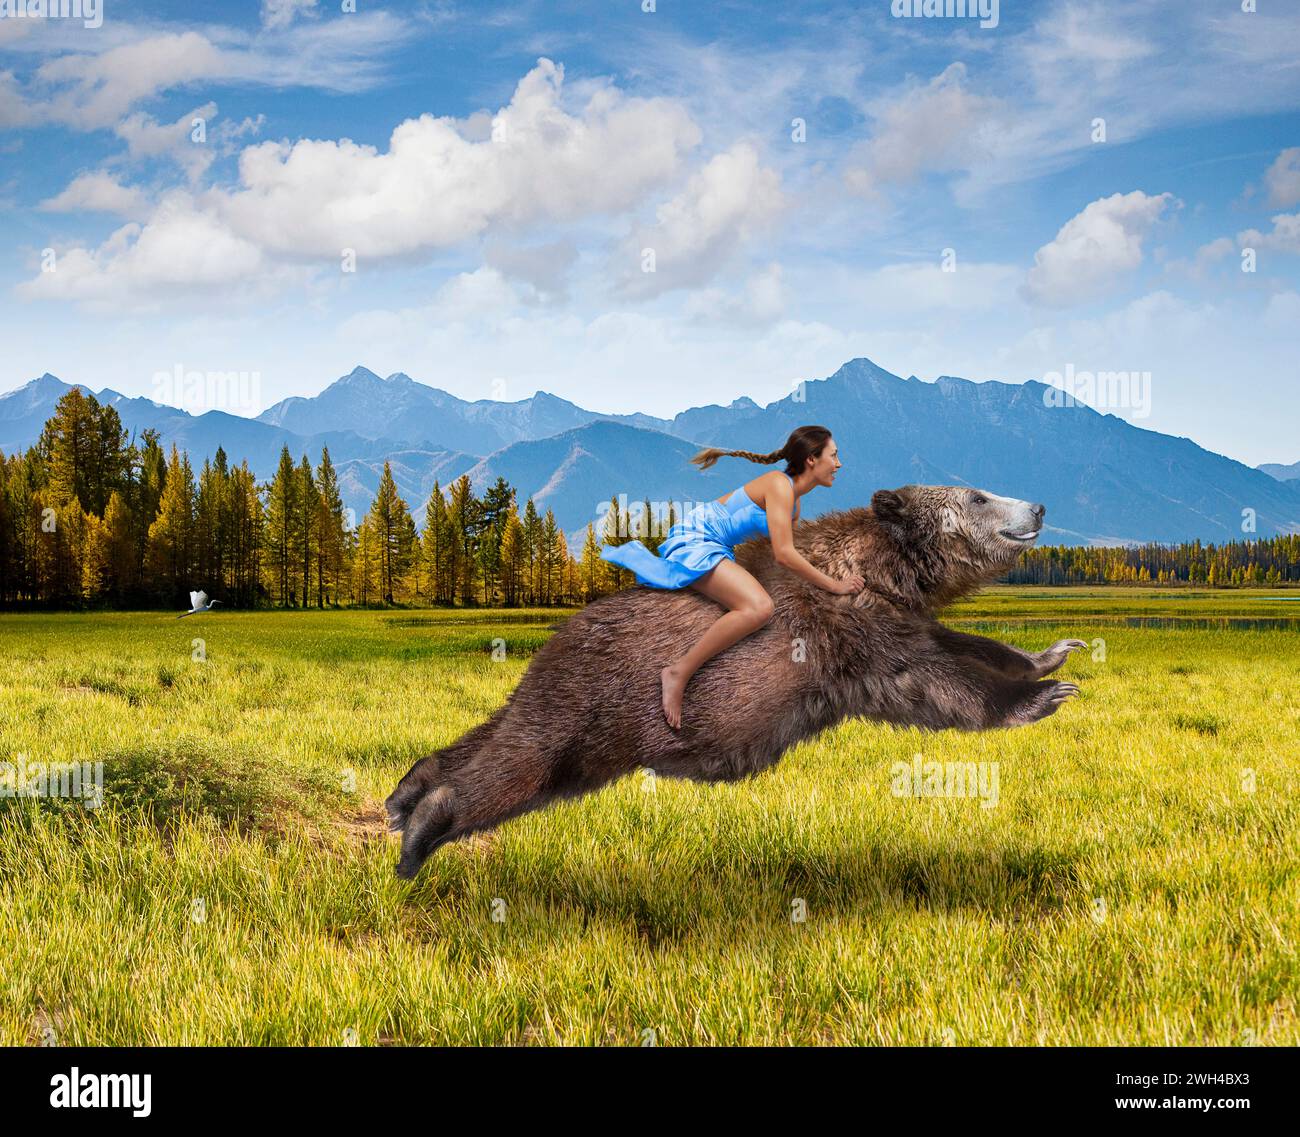 Une femme monte un ours en charge à travers une prairie de montagne dans une image sur les femmes fortes, la liberté, le courage, la force et l'audace. Banque D'Images